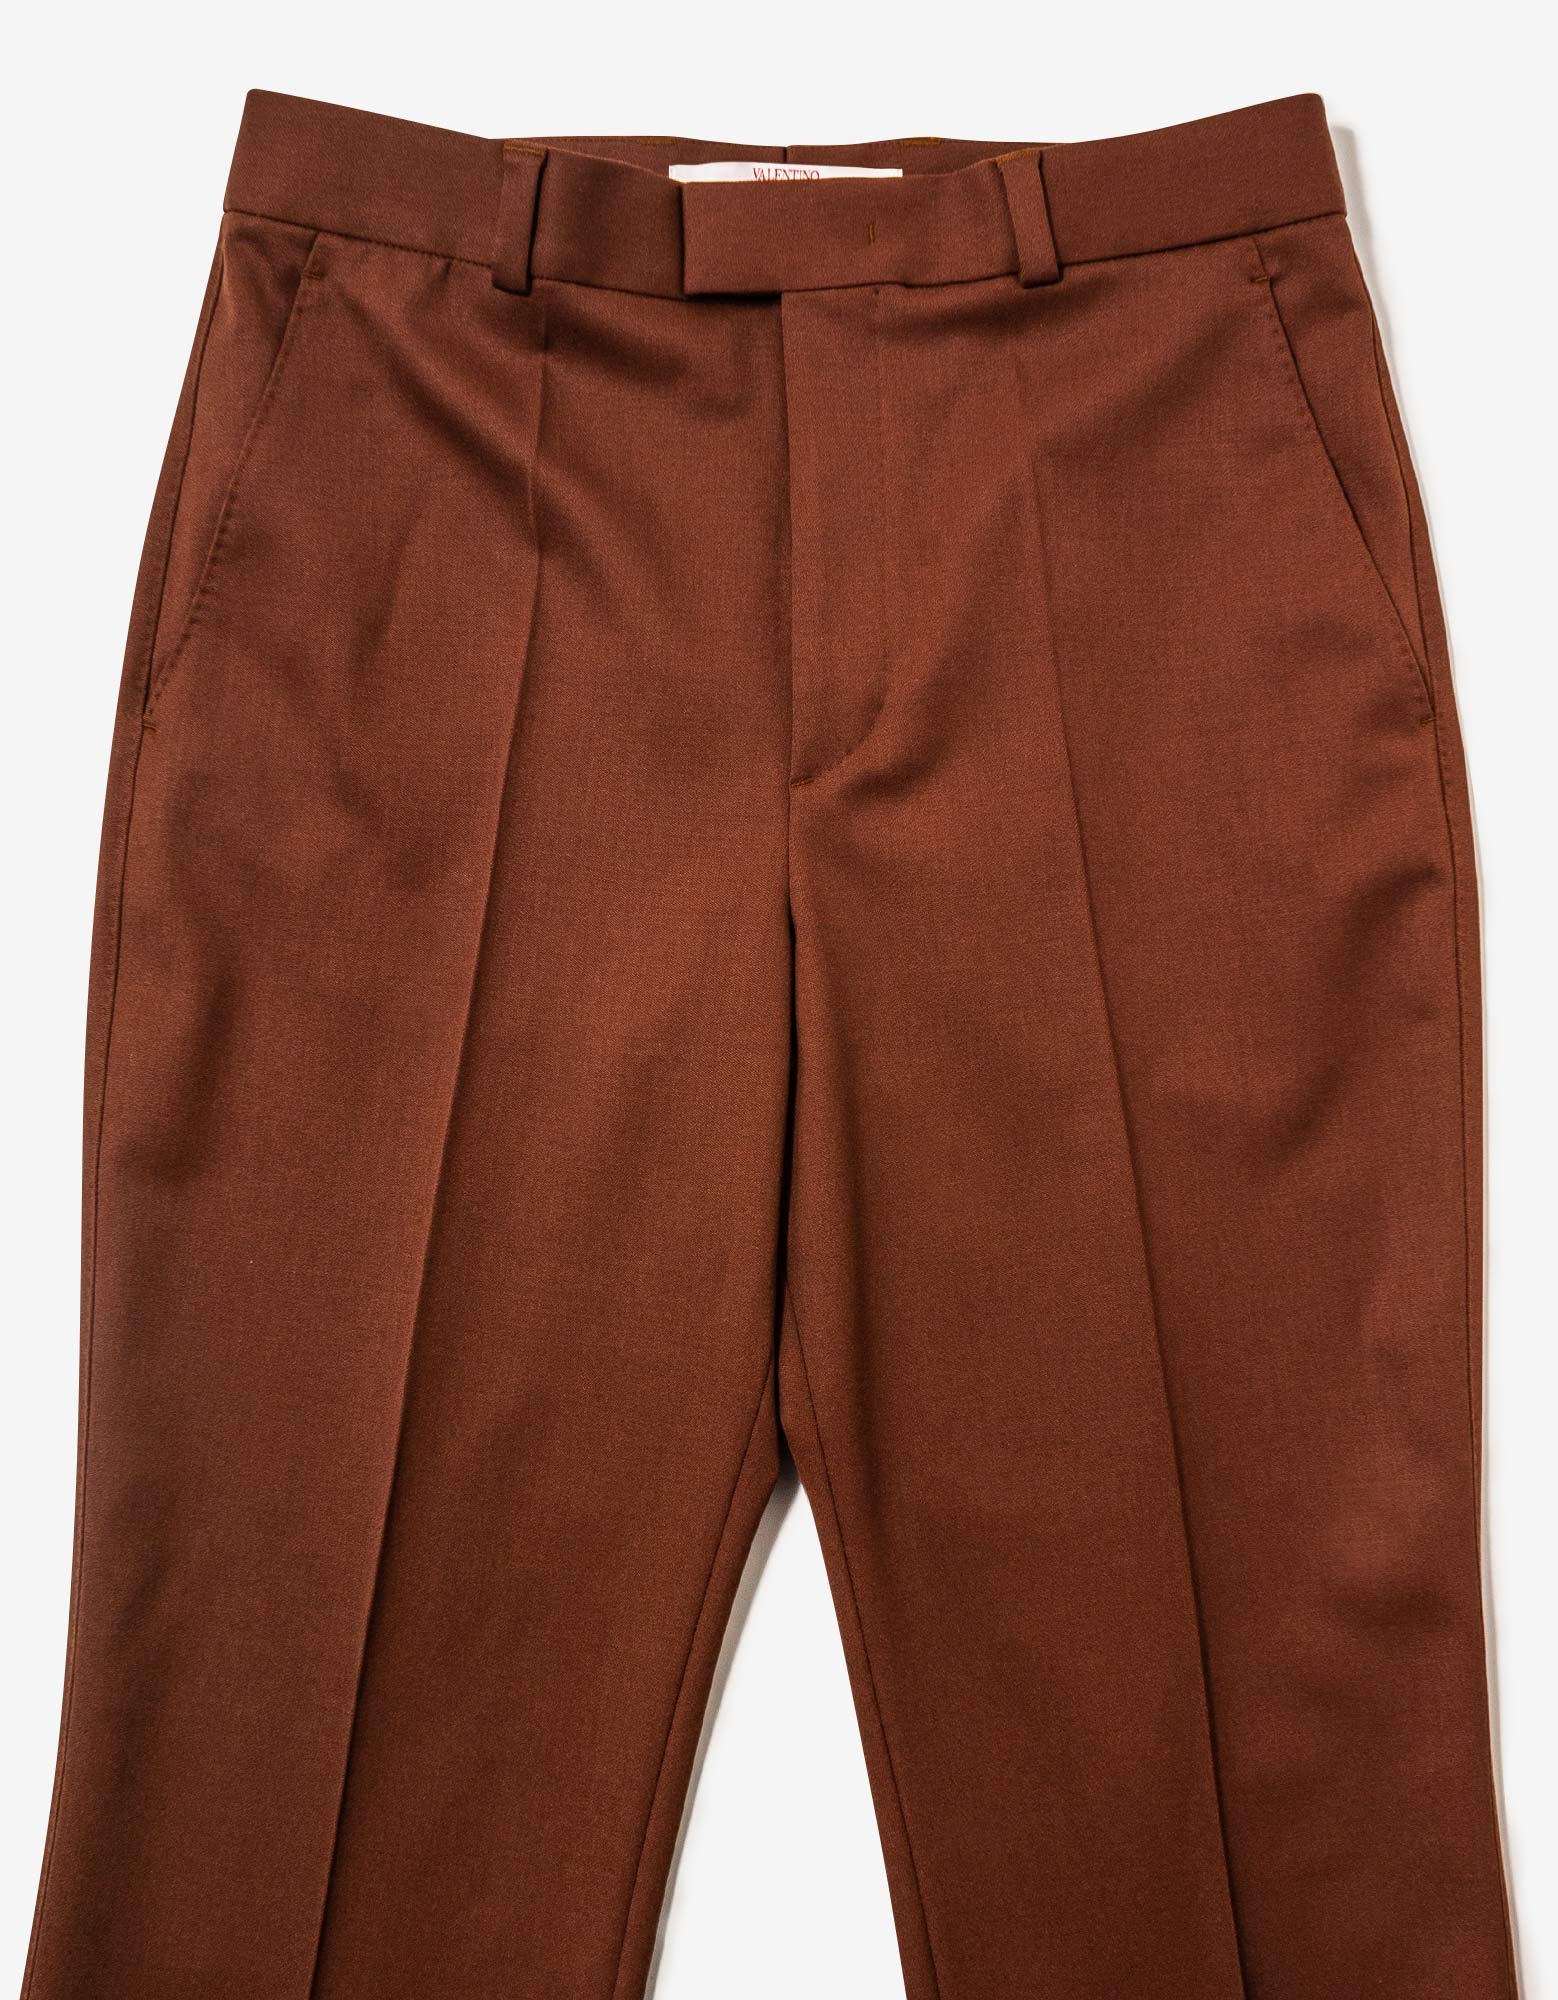 Brown Wool Trousers - 3